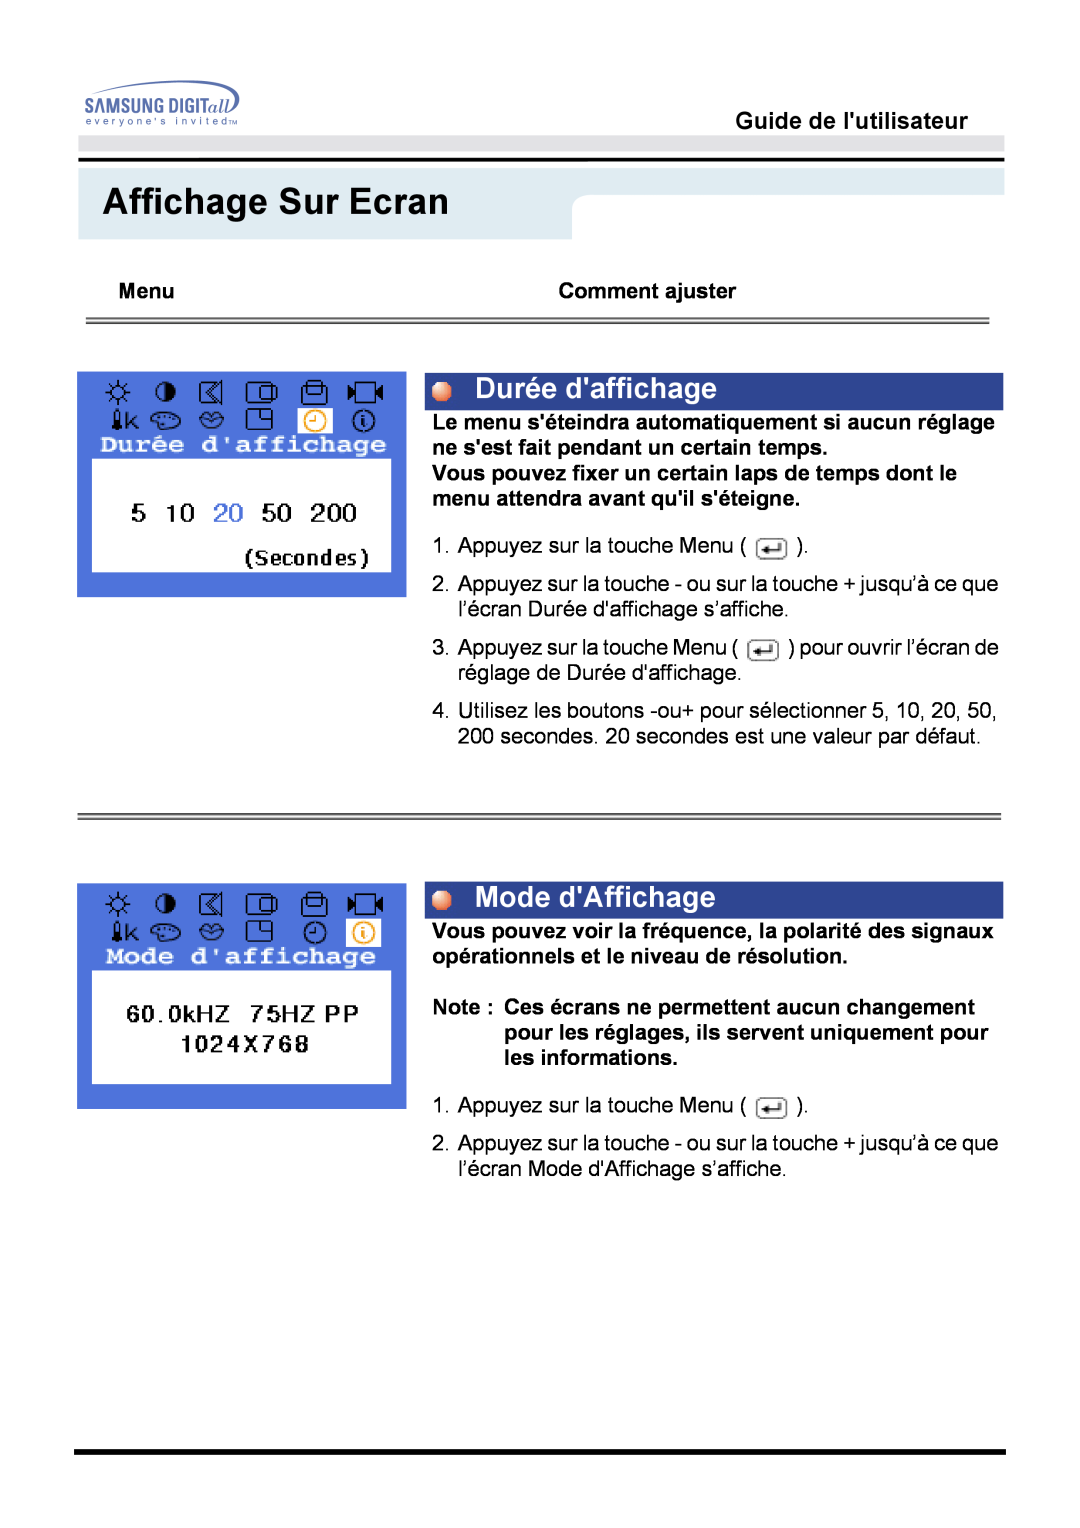 Samsung GH15MSSS/EDC, GH15MSSB/EDC manual Durée daffichage, Mode dAffichage, Affichage Sur Ecran, Guide de lutilisateur 